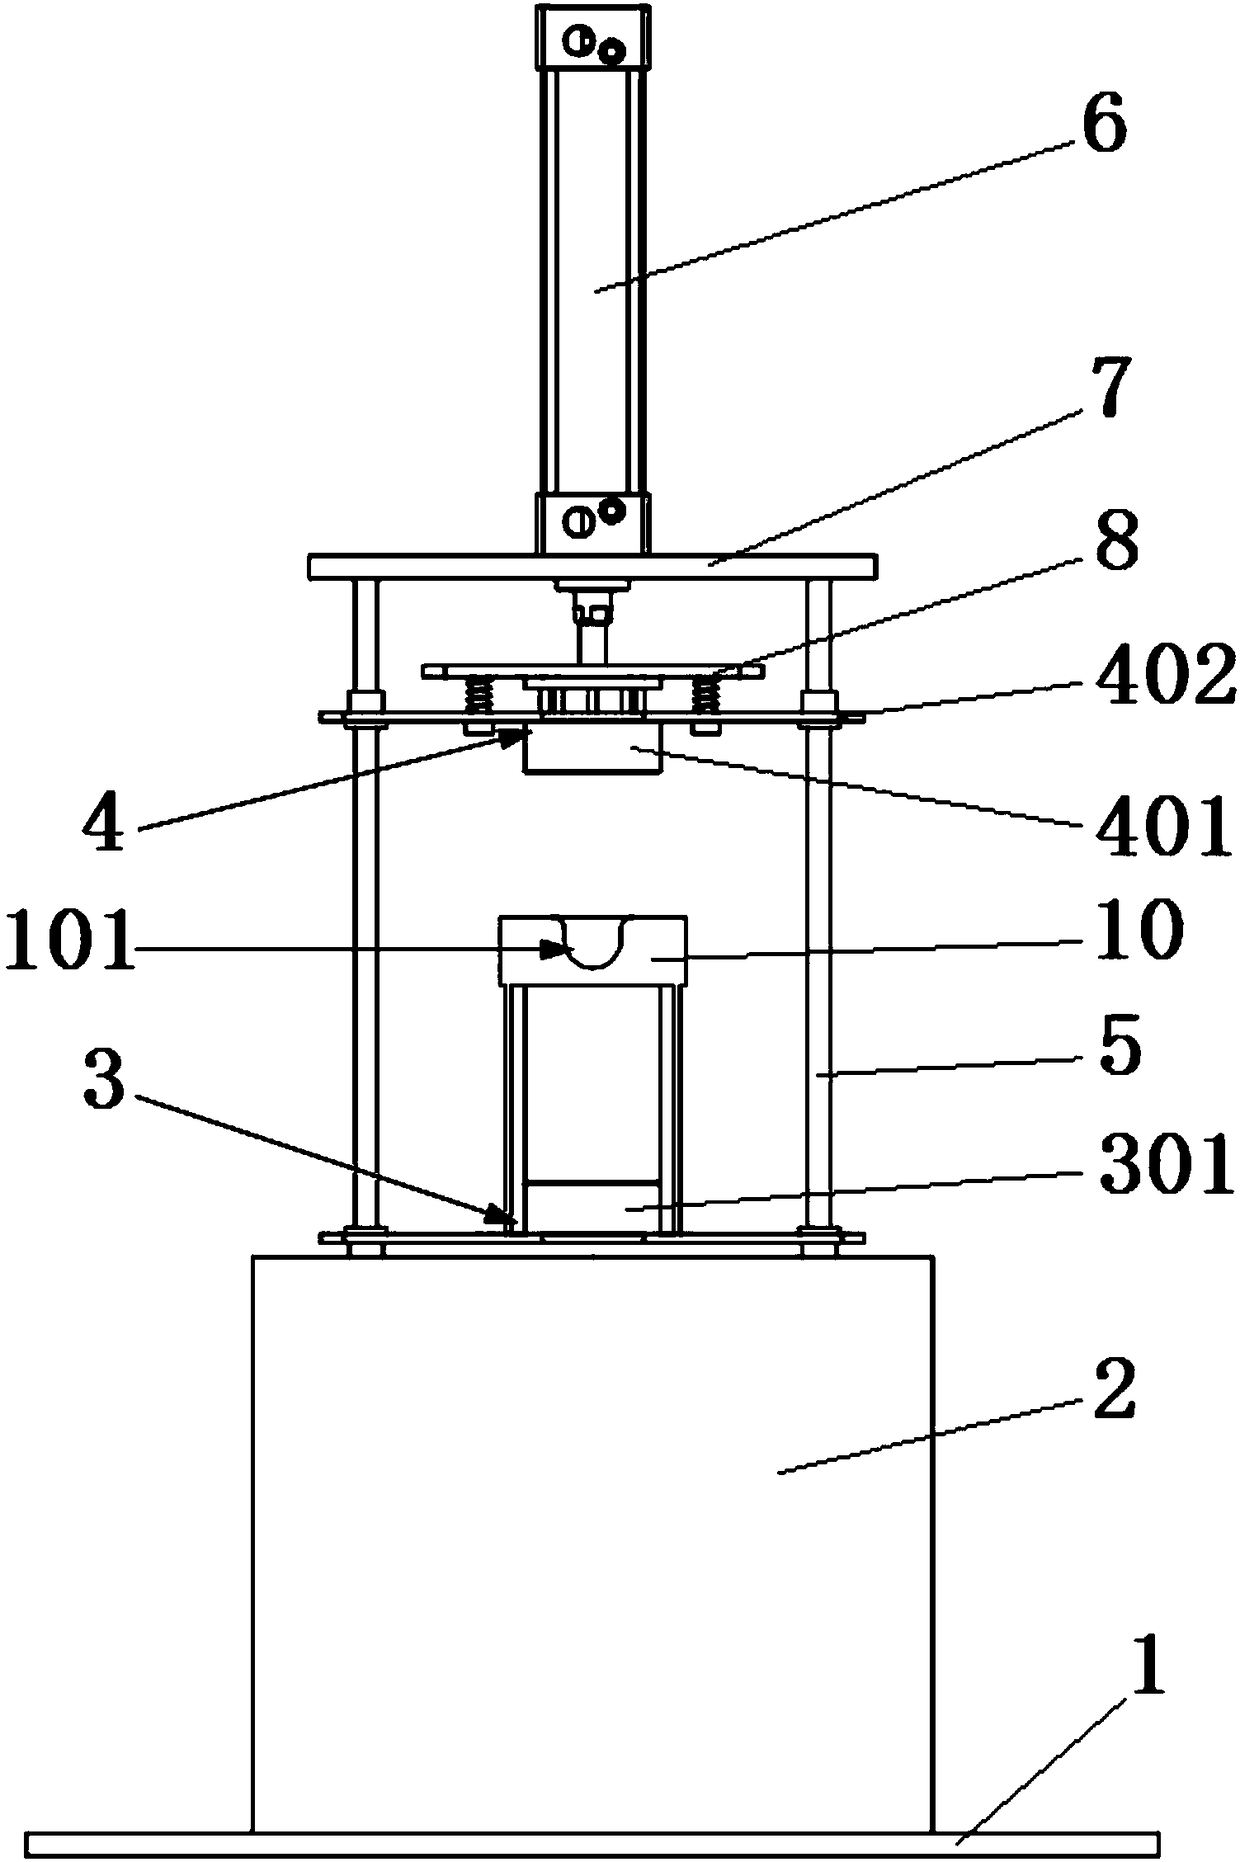 An automatic valve leak detection equipment